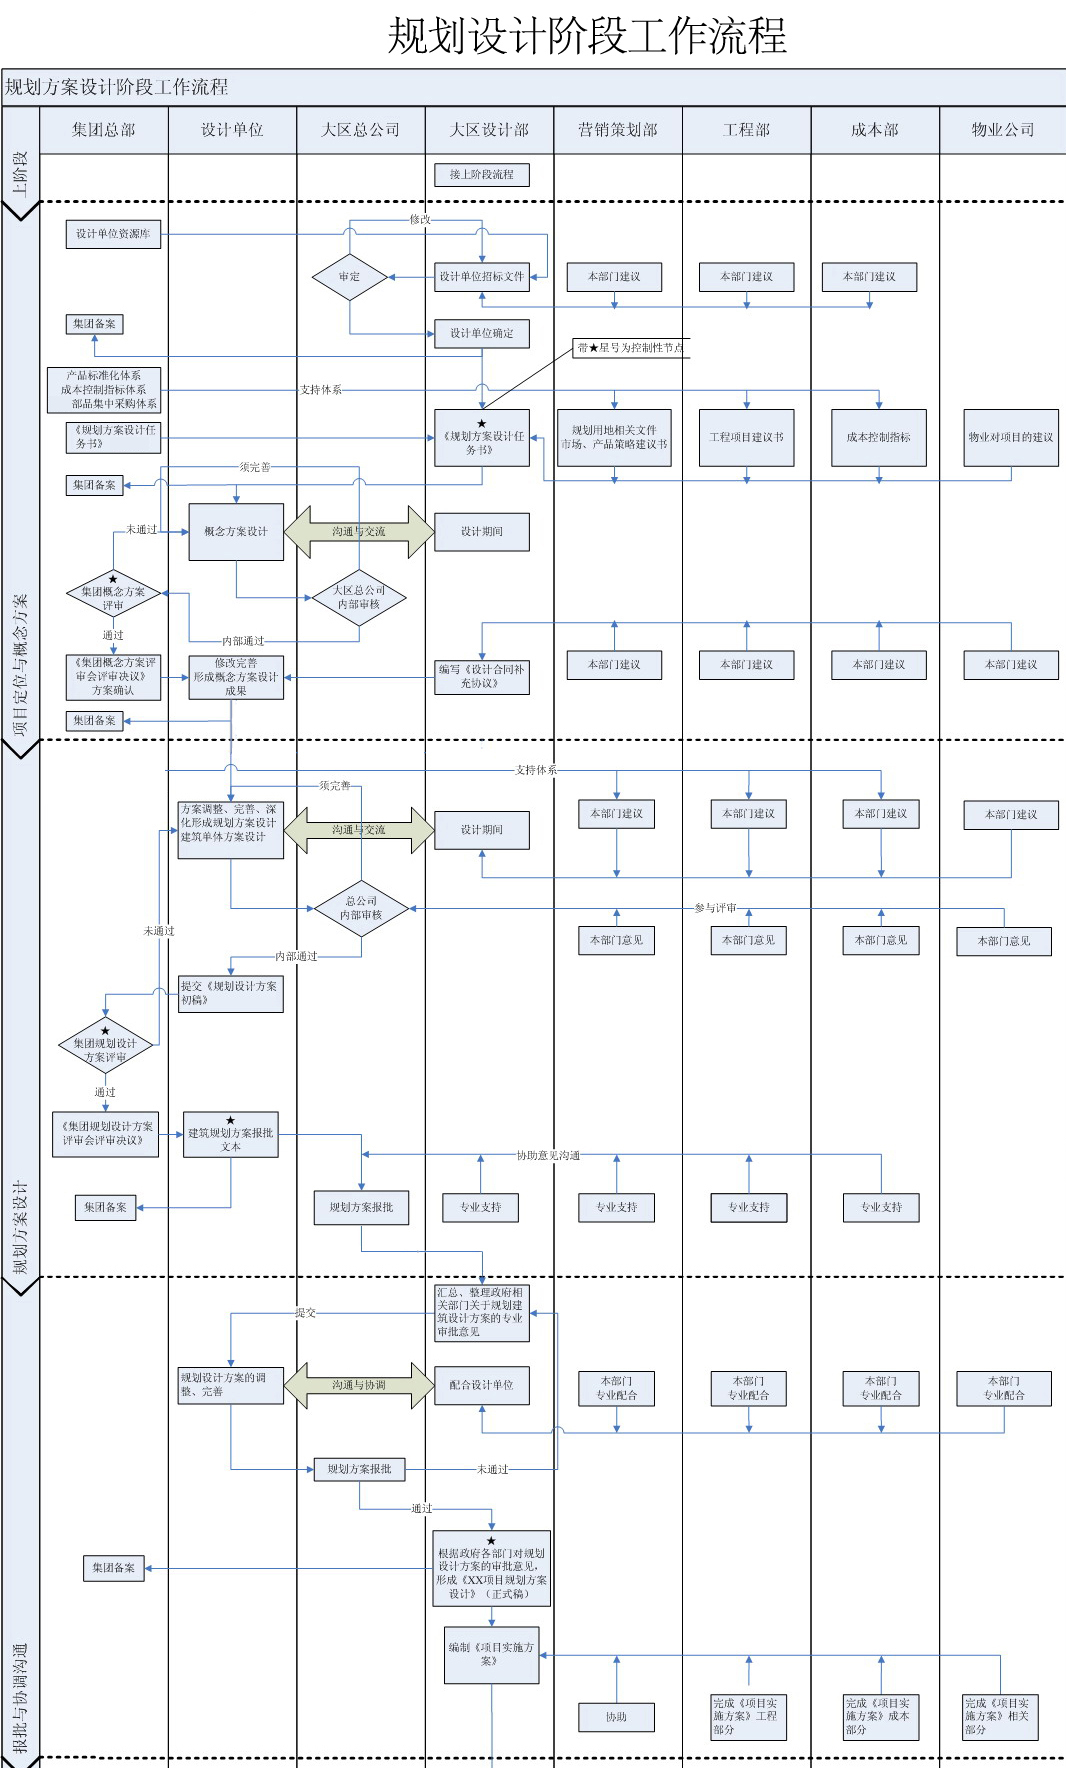 某集团规划方案设计管理流程图